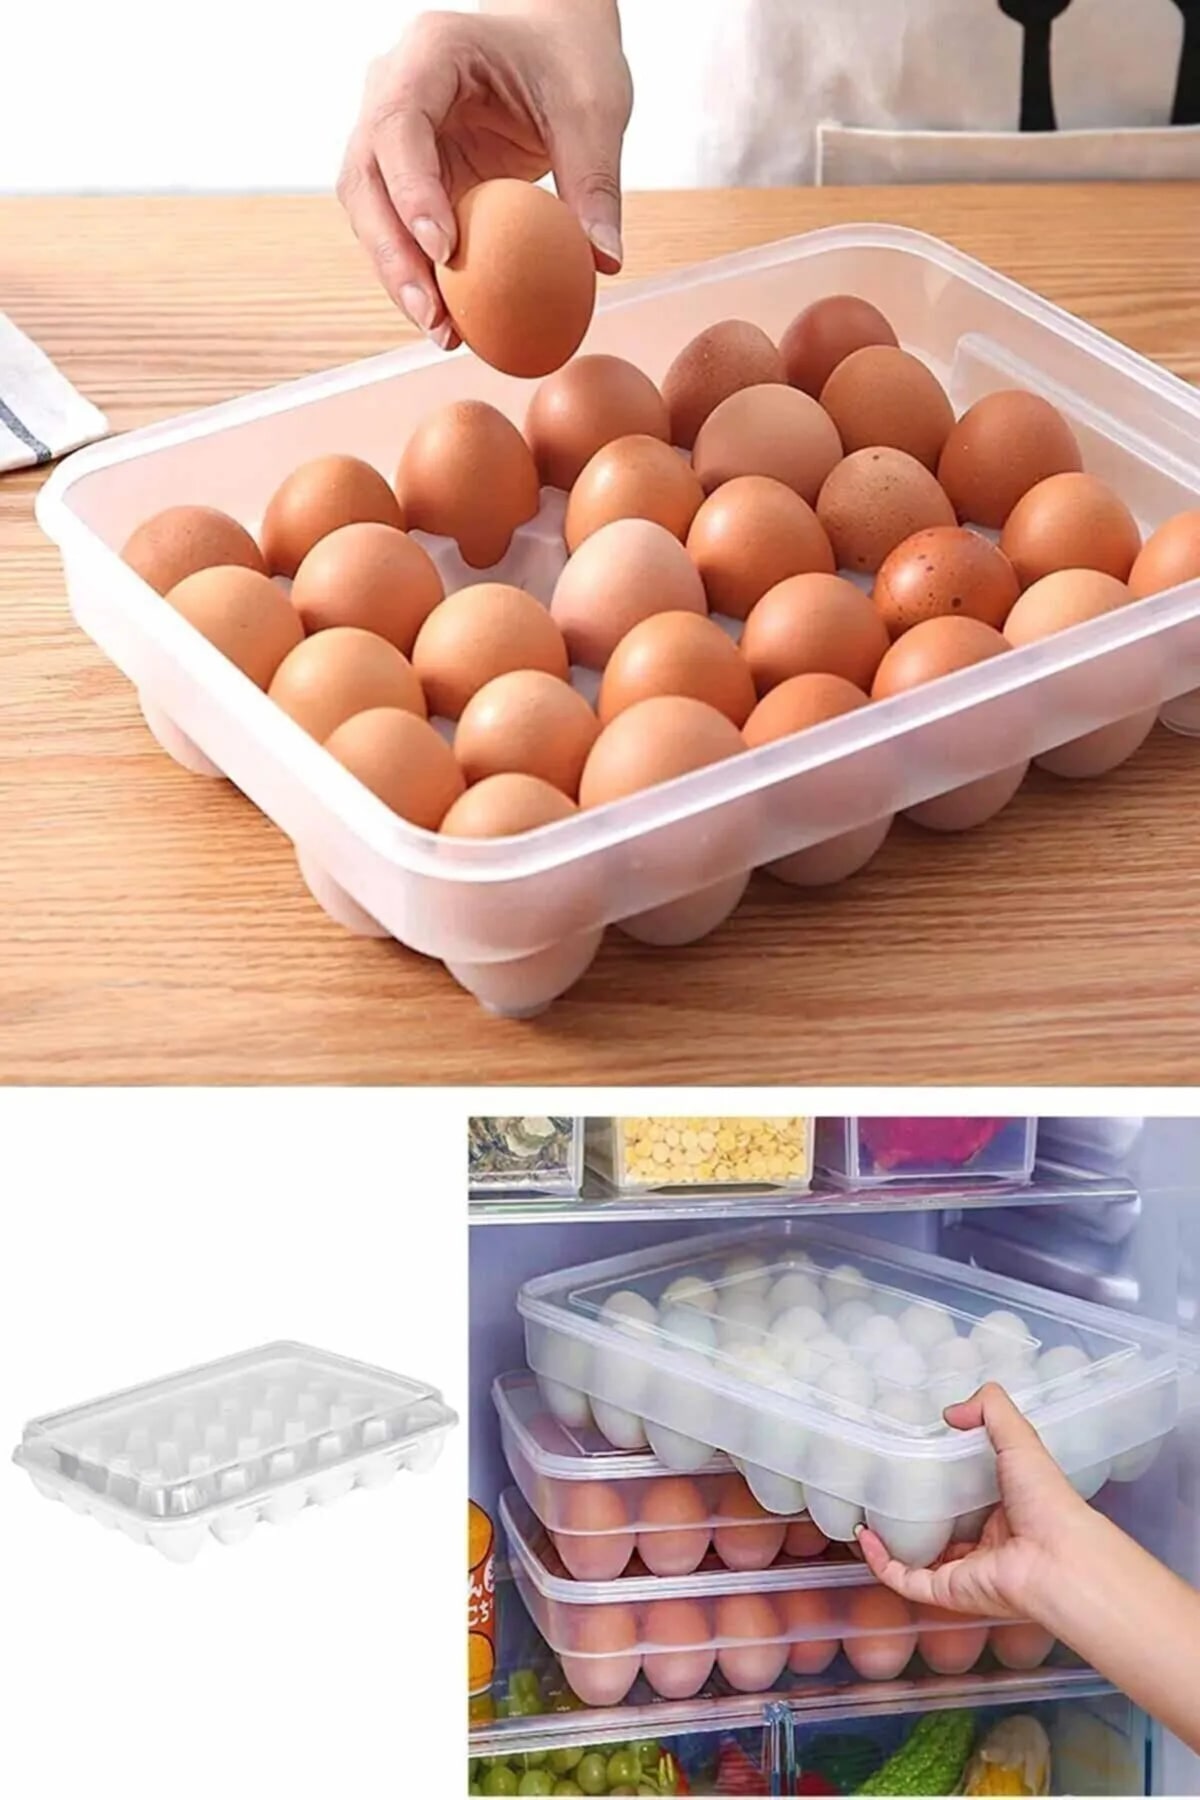 CLZ174 30 Yumurta Kapasiteli Yumurta Saklama Kabı -Kapaklı Pratik Yumurta Saklama Kutusu-Yumurta Organizeri